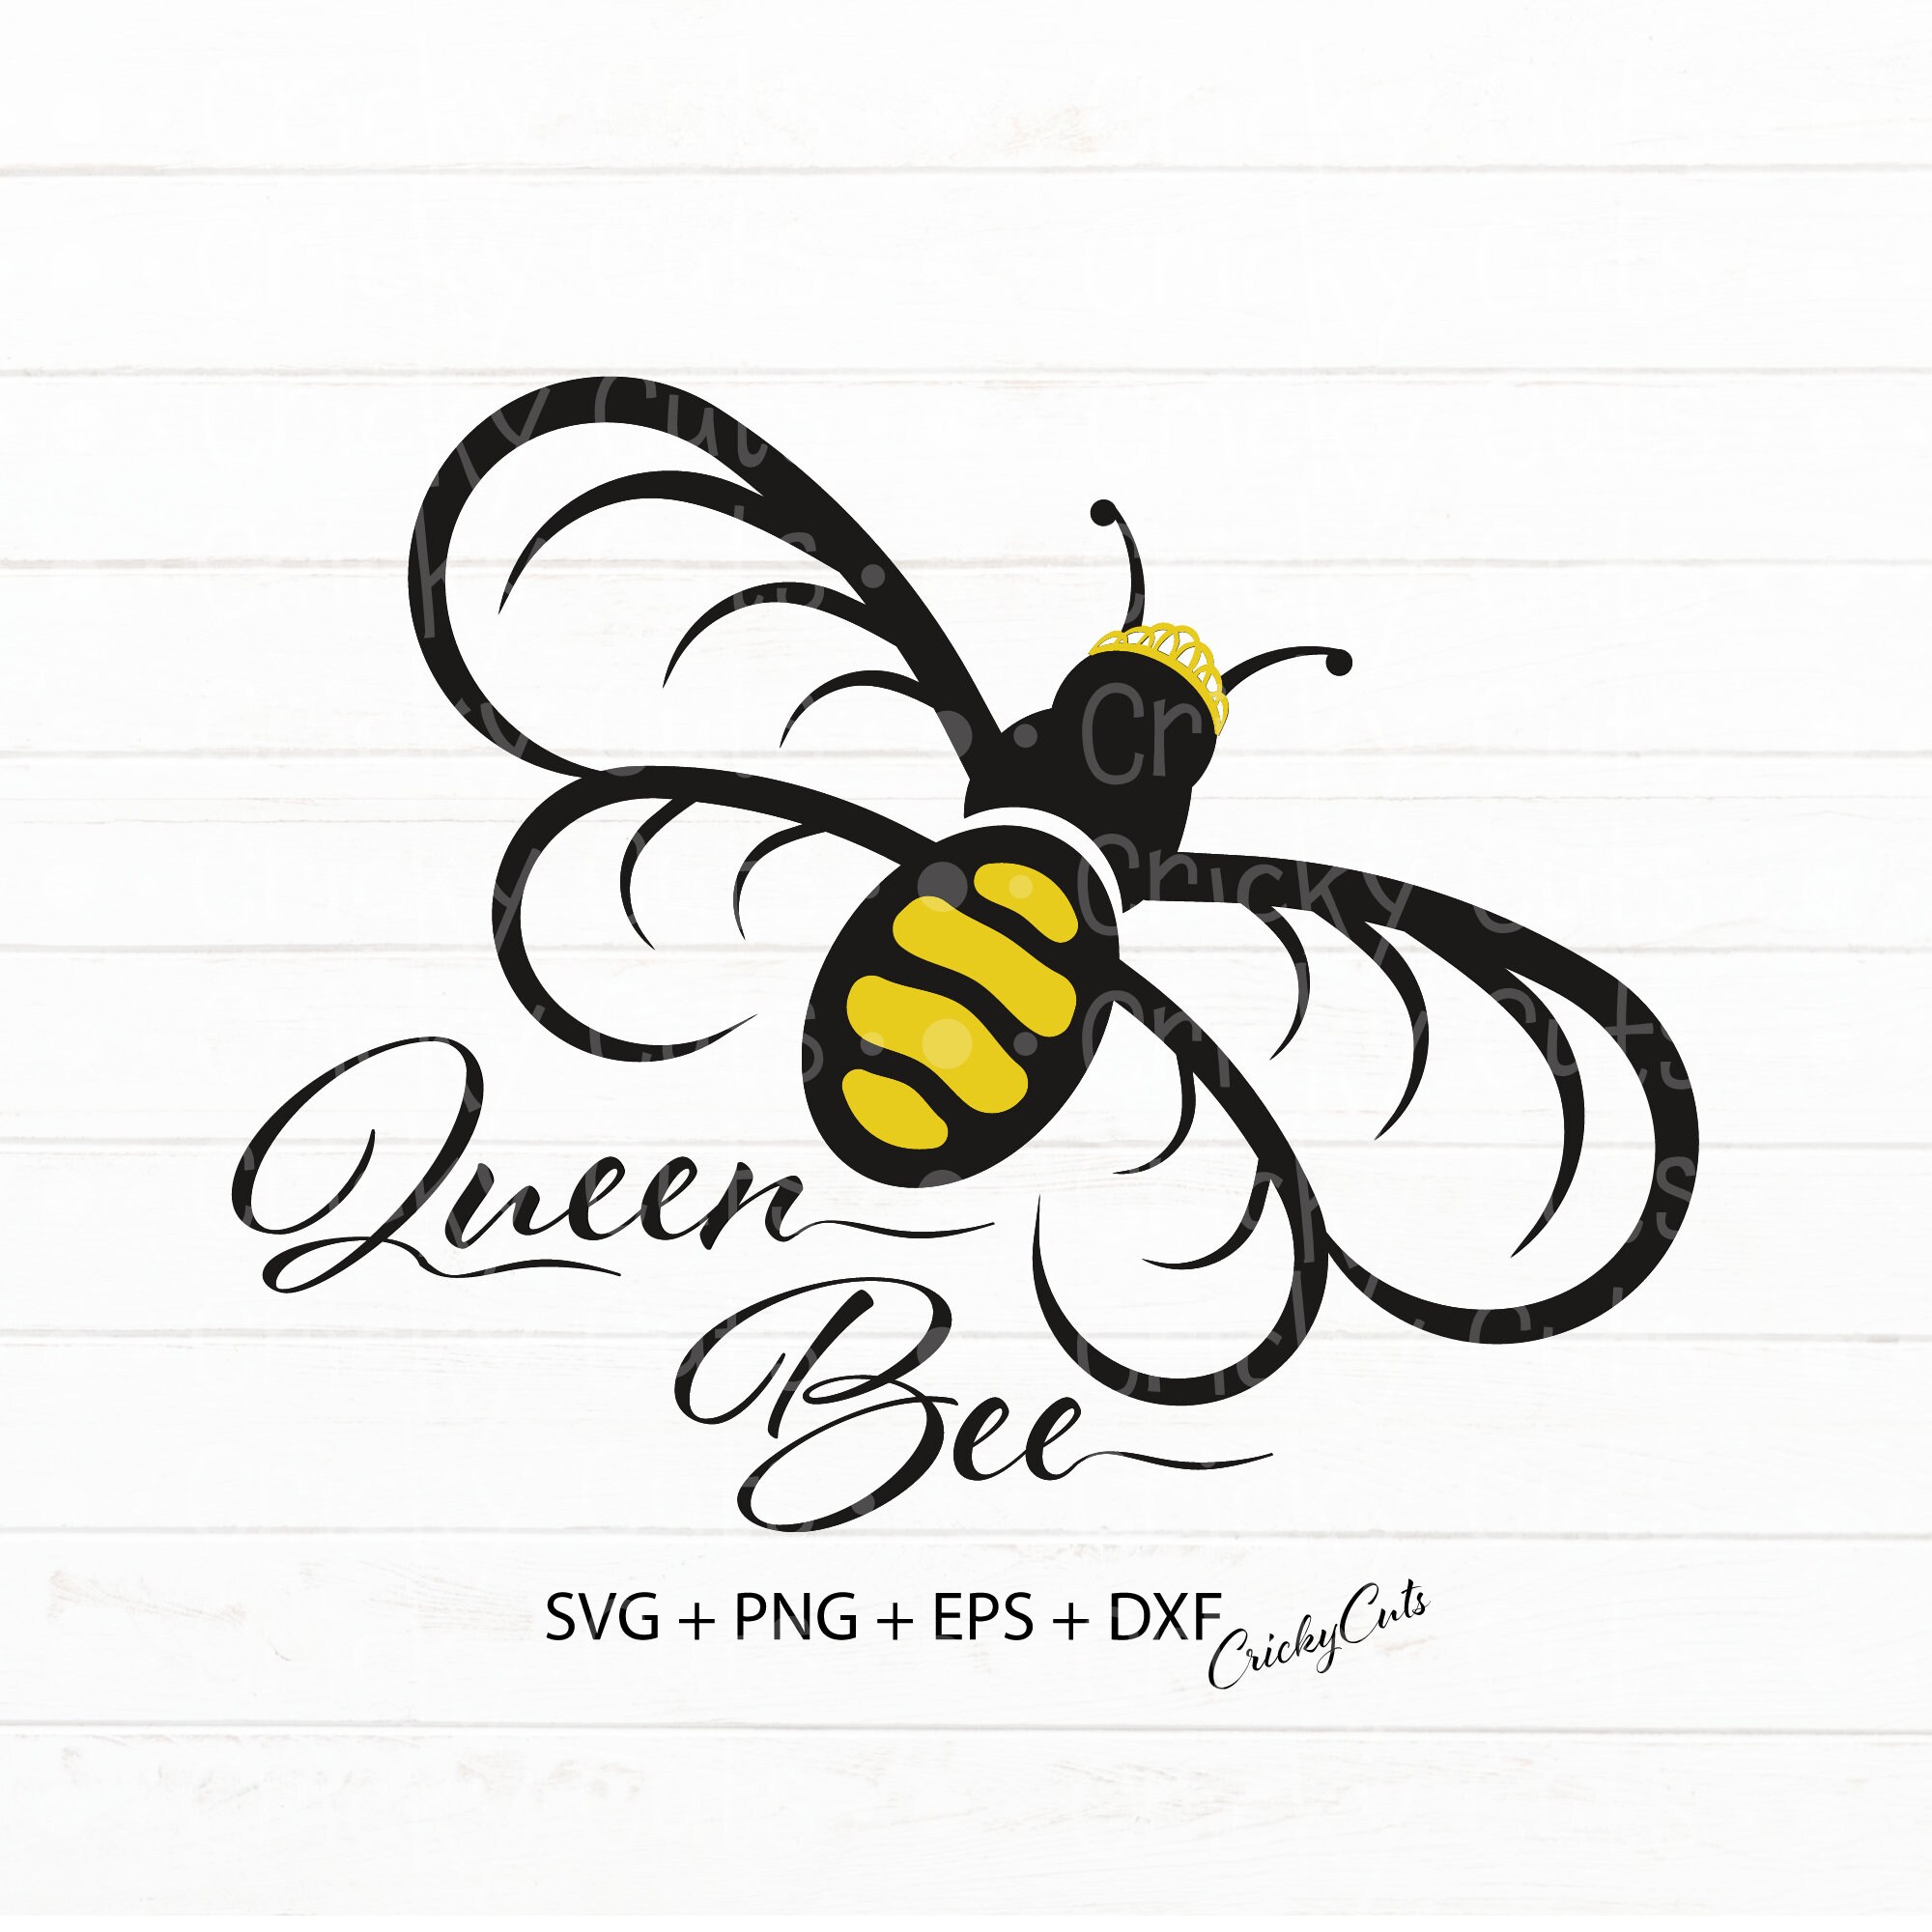 Meet the Queen Bee — Queen Bee's Kitchen